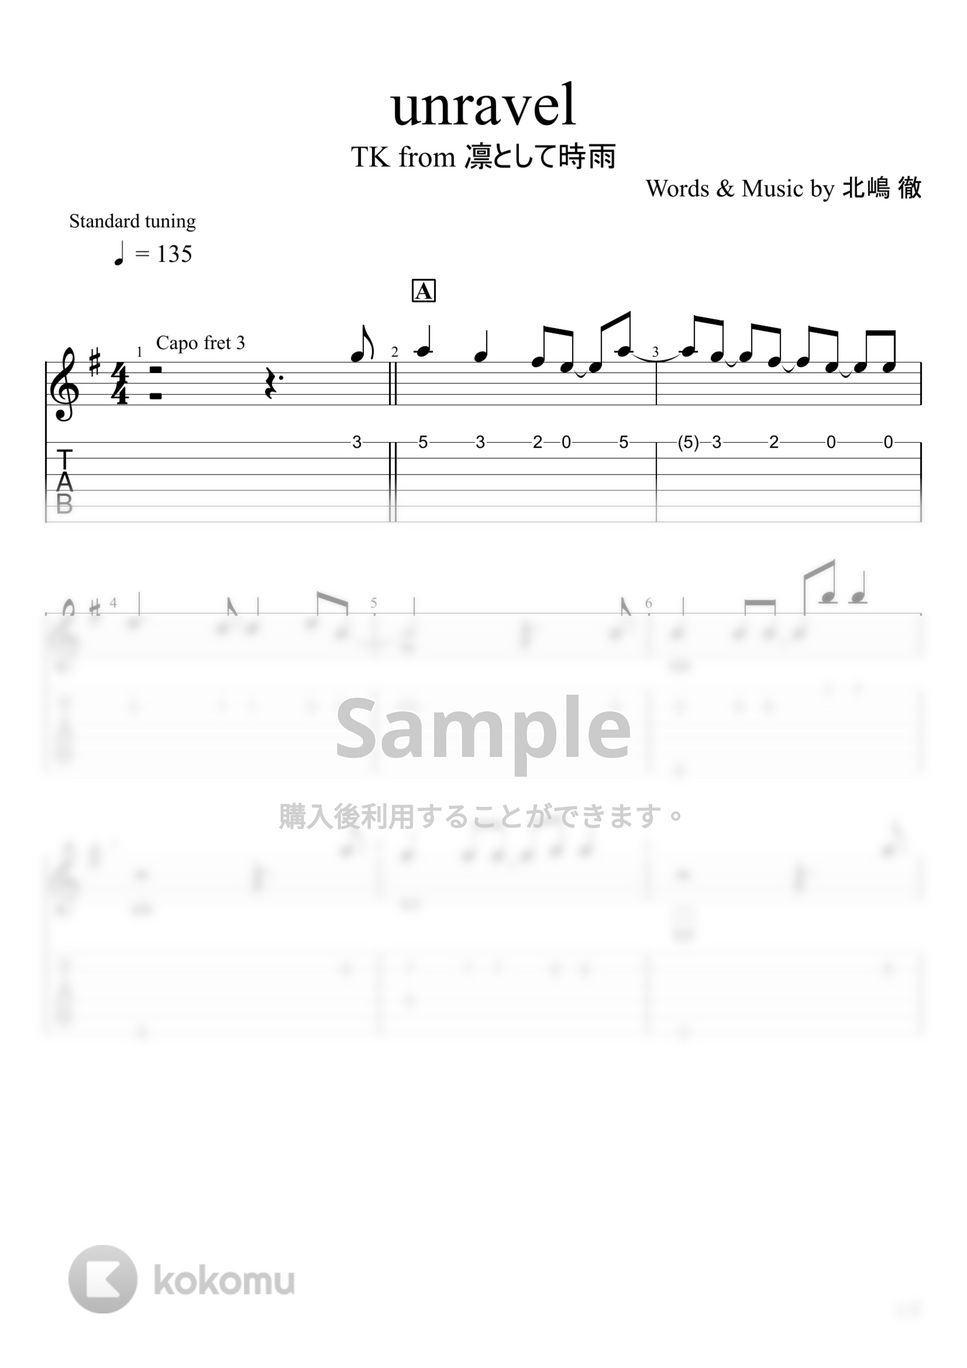 東京喰種トーキョーグール - unravel (ソロギター) by u3danchou